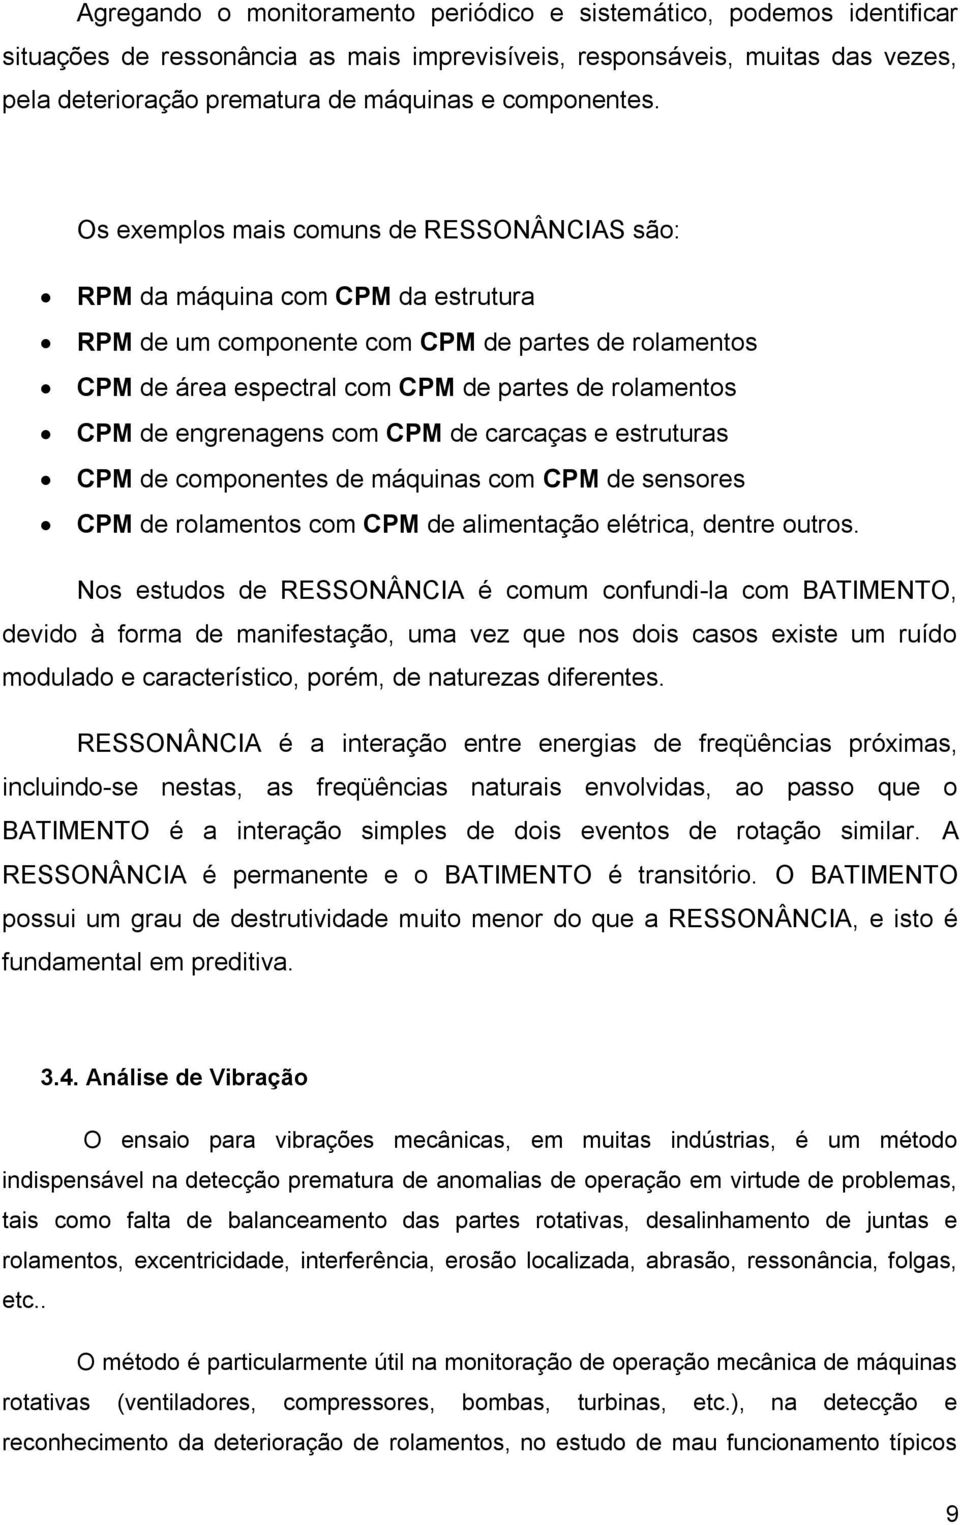 Os exemplos mais comuns de RESSONÂNCIAS são: RPM da máquina com CPM da estrutura RPM de um componente com CPM de partes de rolamentos CPM de área espectral com CPM de partes de rolamentos CPM de